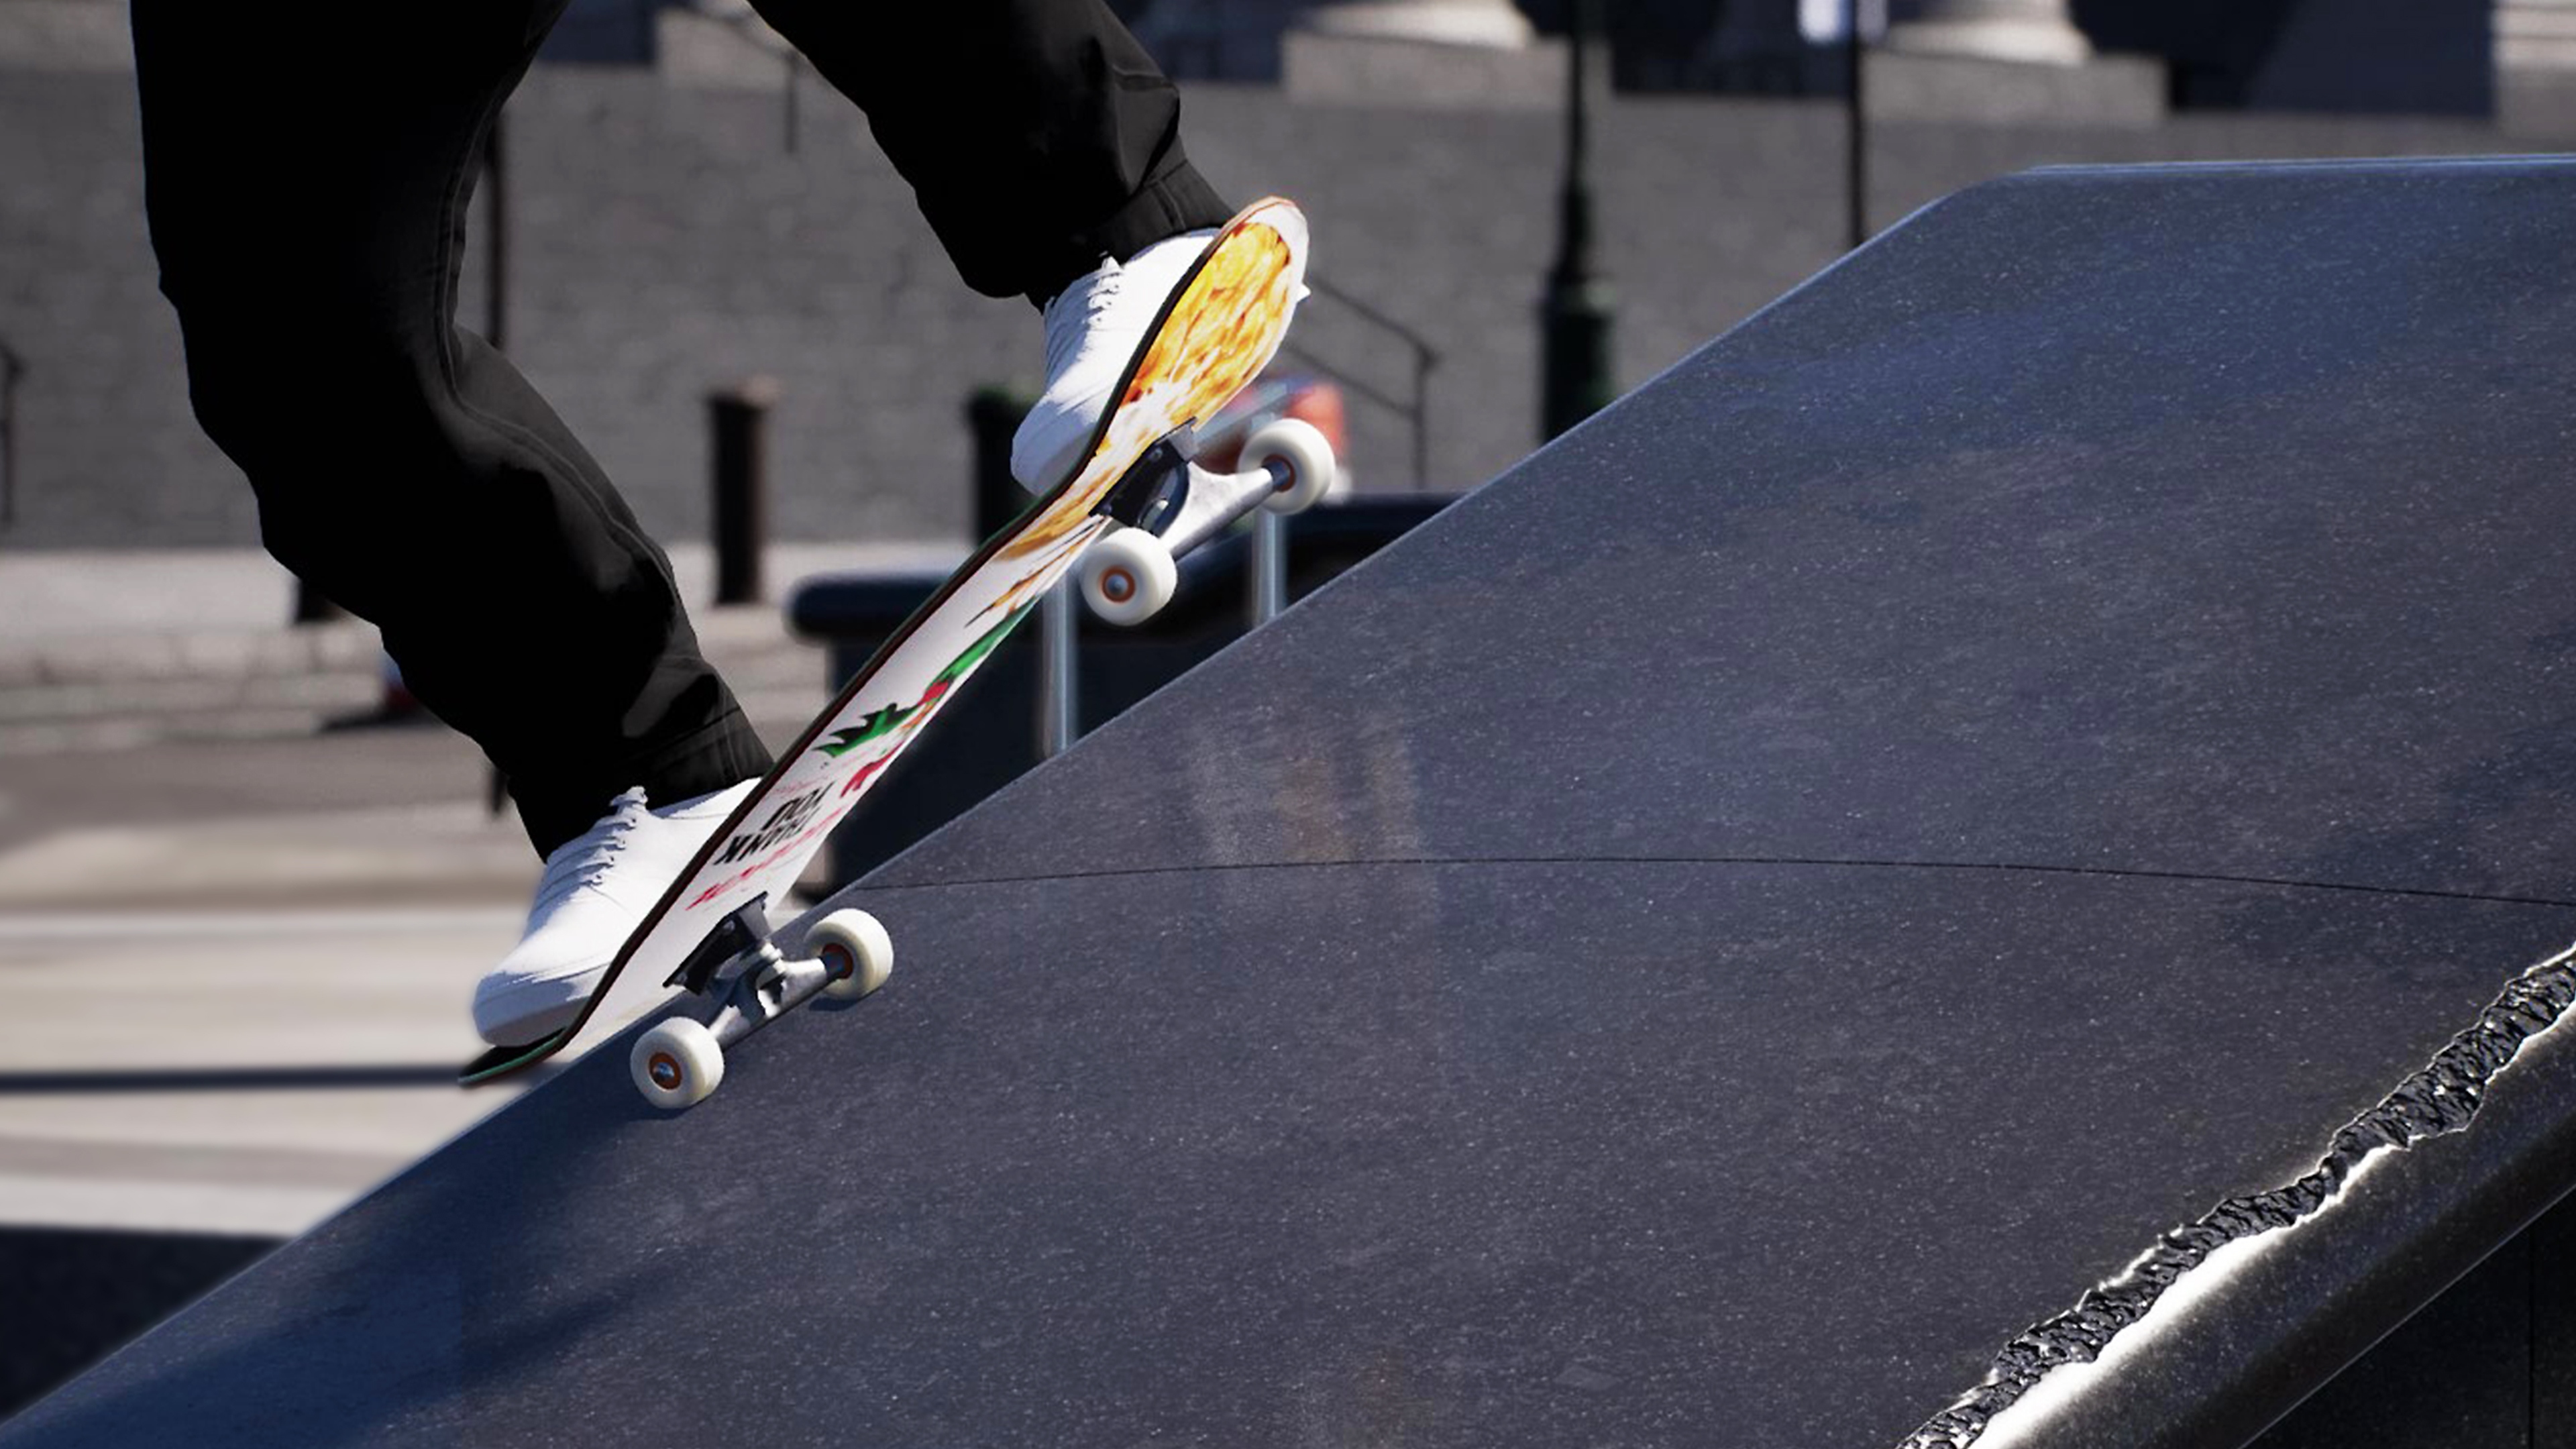 Session: Skate Sim-screenshot van een skater die op een rand grindt